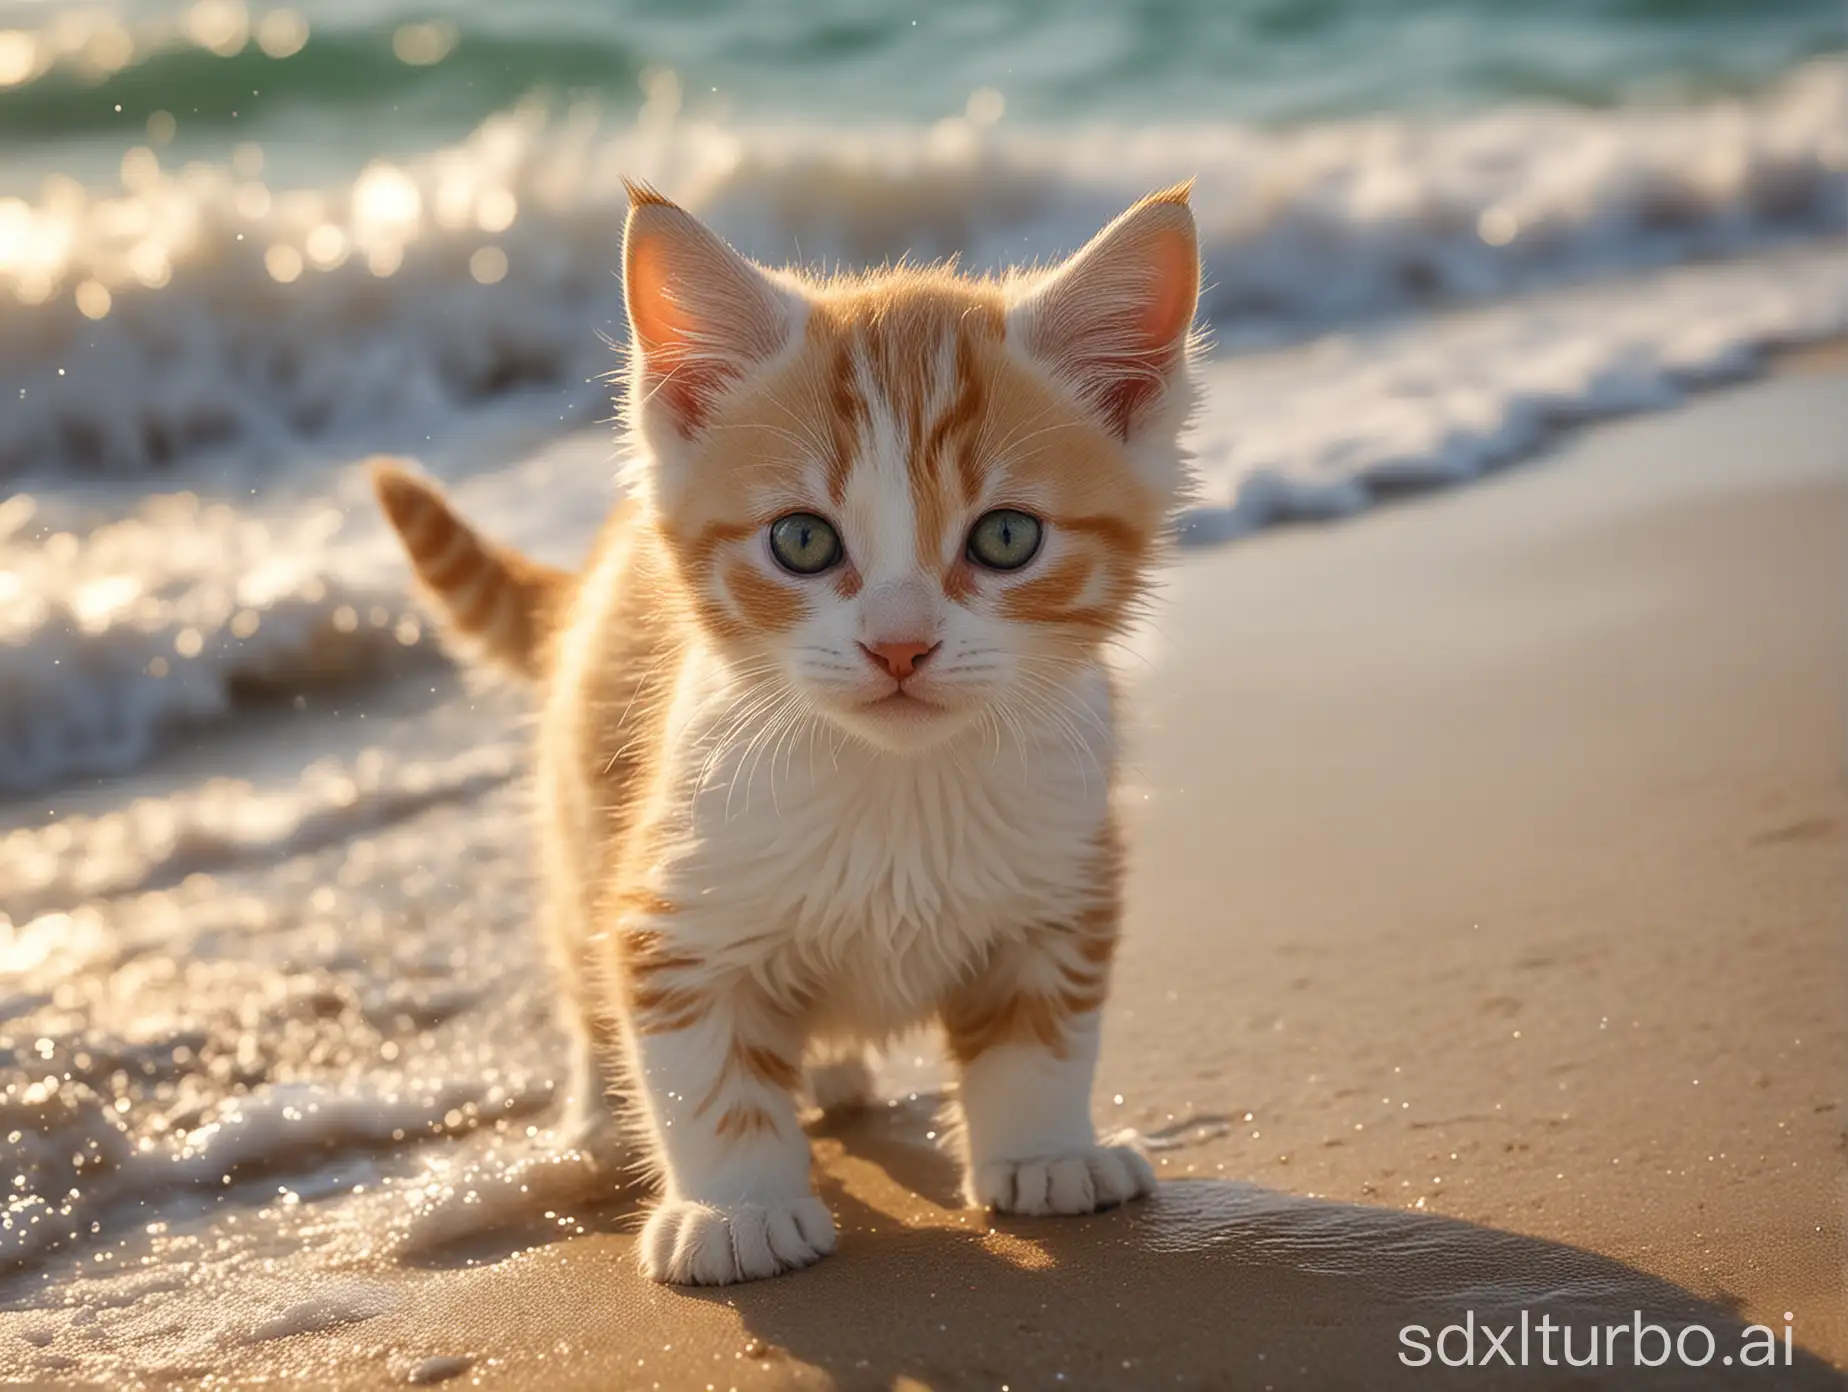 Playful-Kitten-Frolicking-on-a-Sunlit-Beach